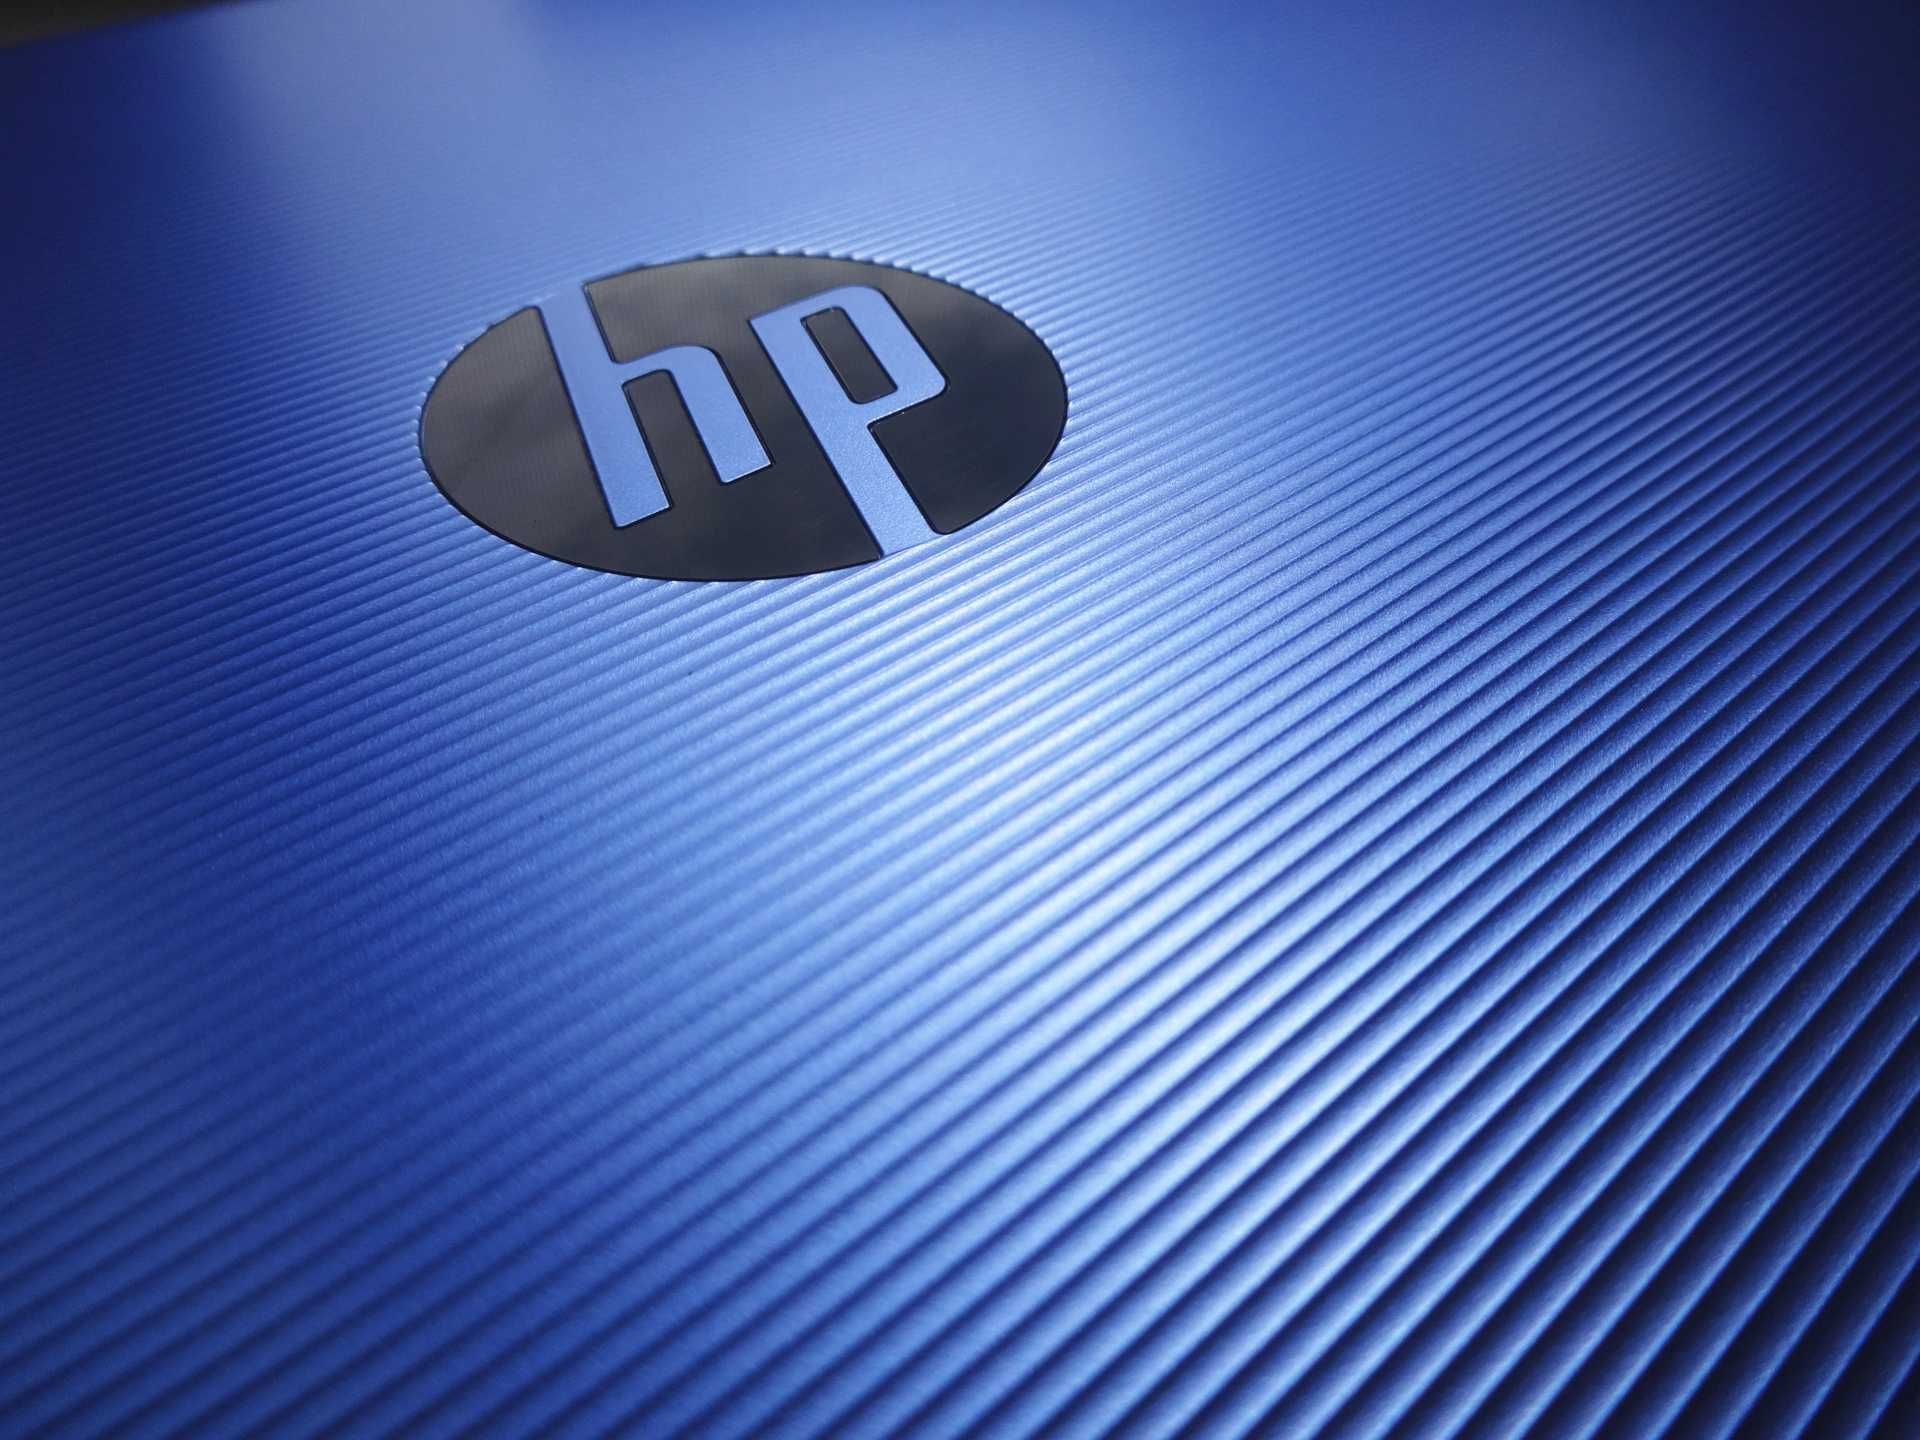 Ноутбук HP модель 15-ba026ca диагональ 15.6" с Windows почти новый